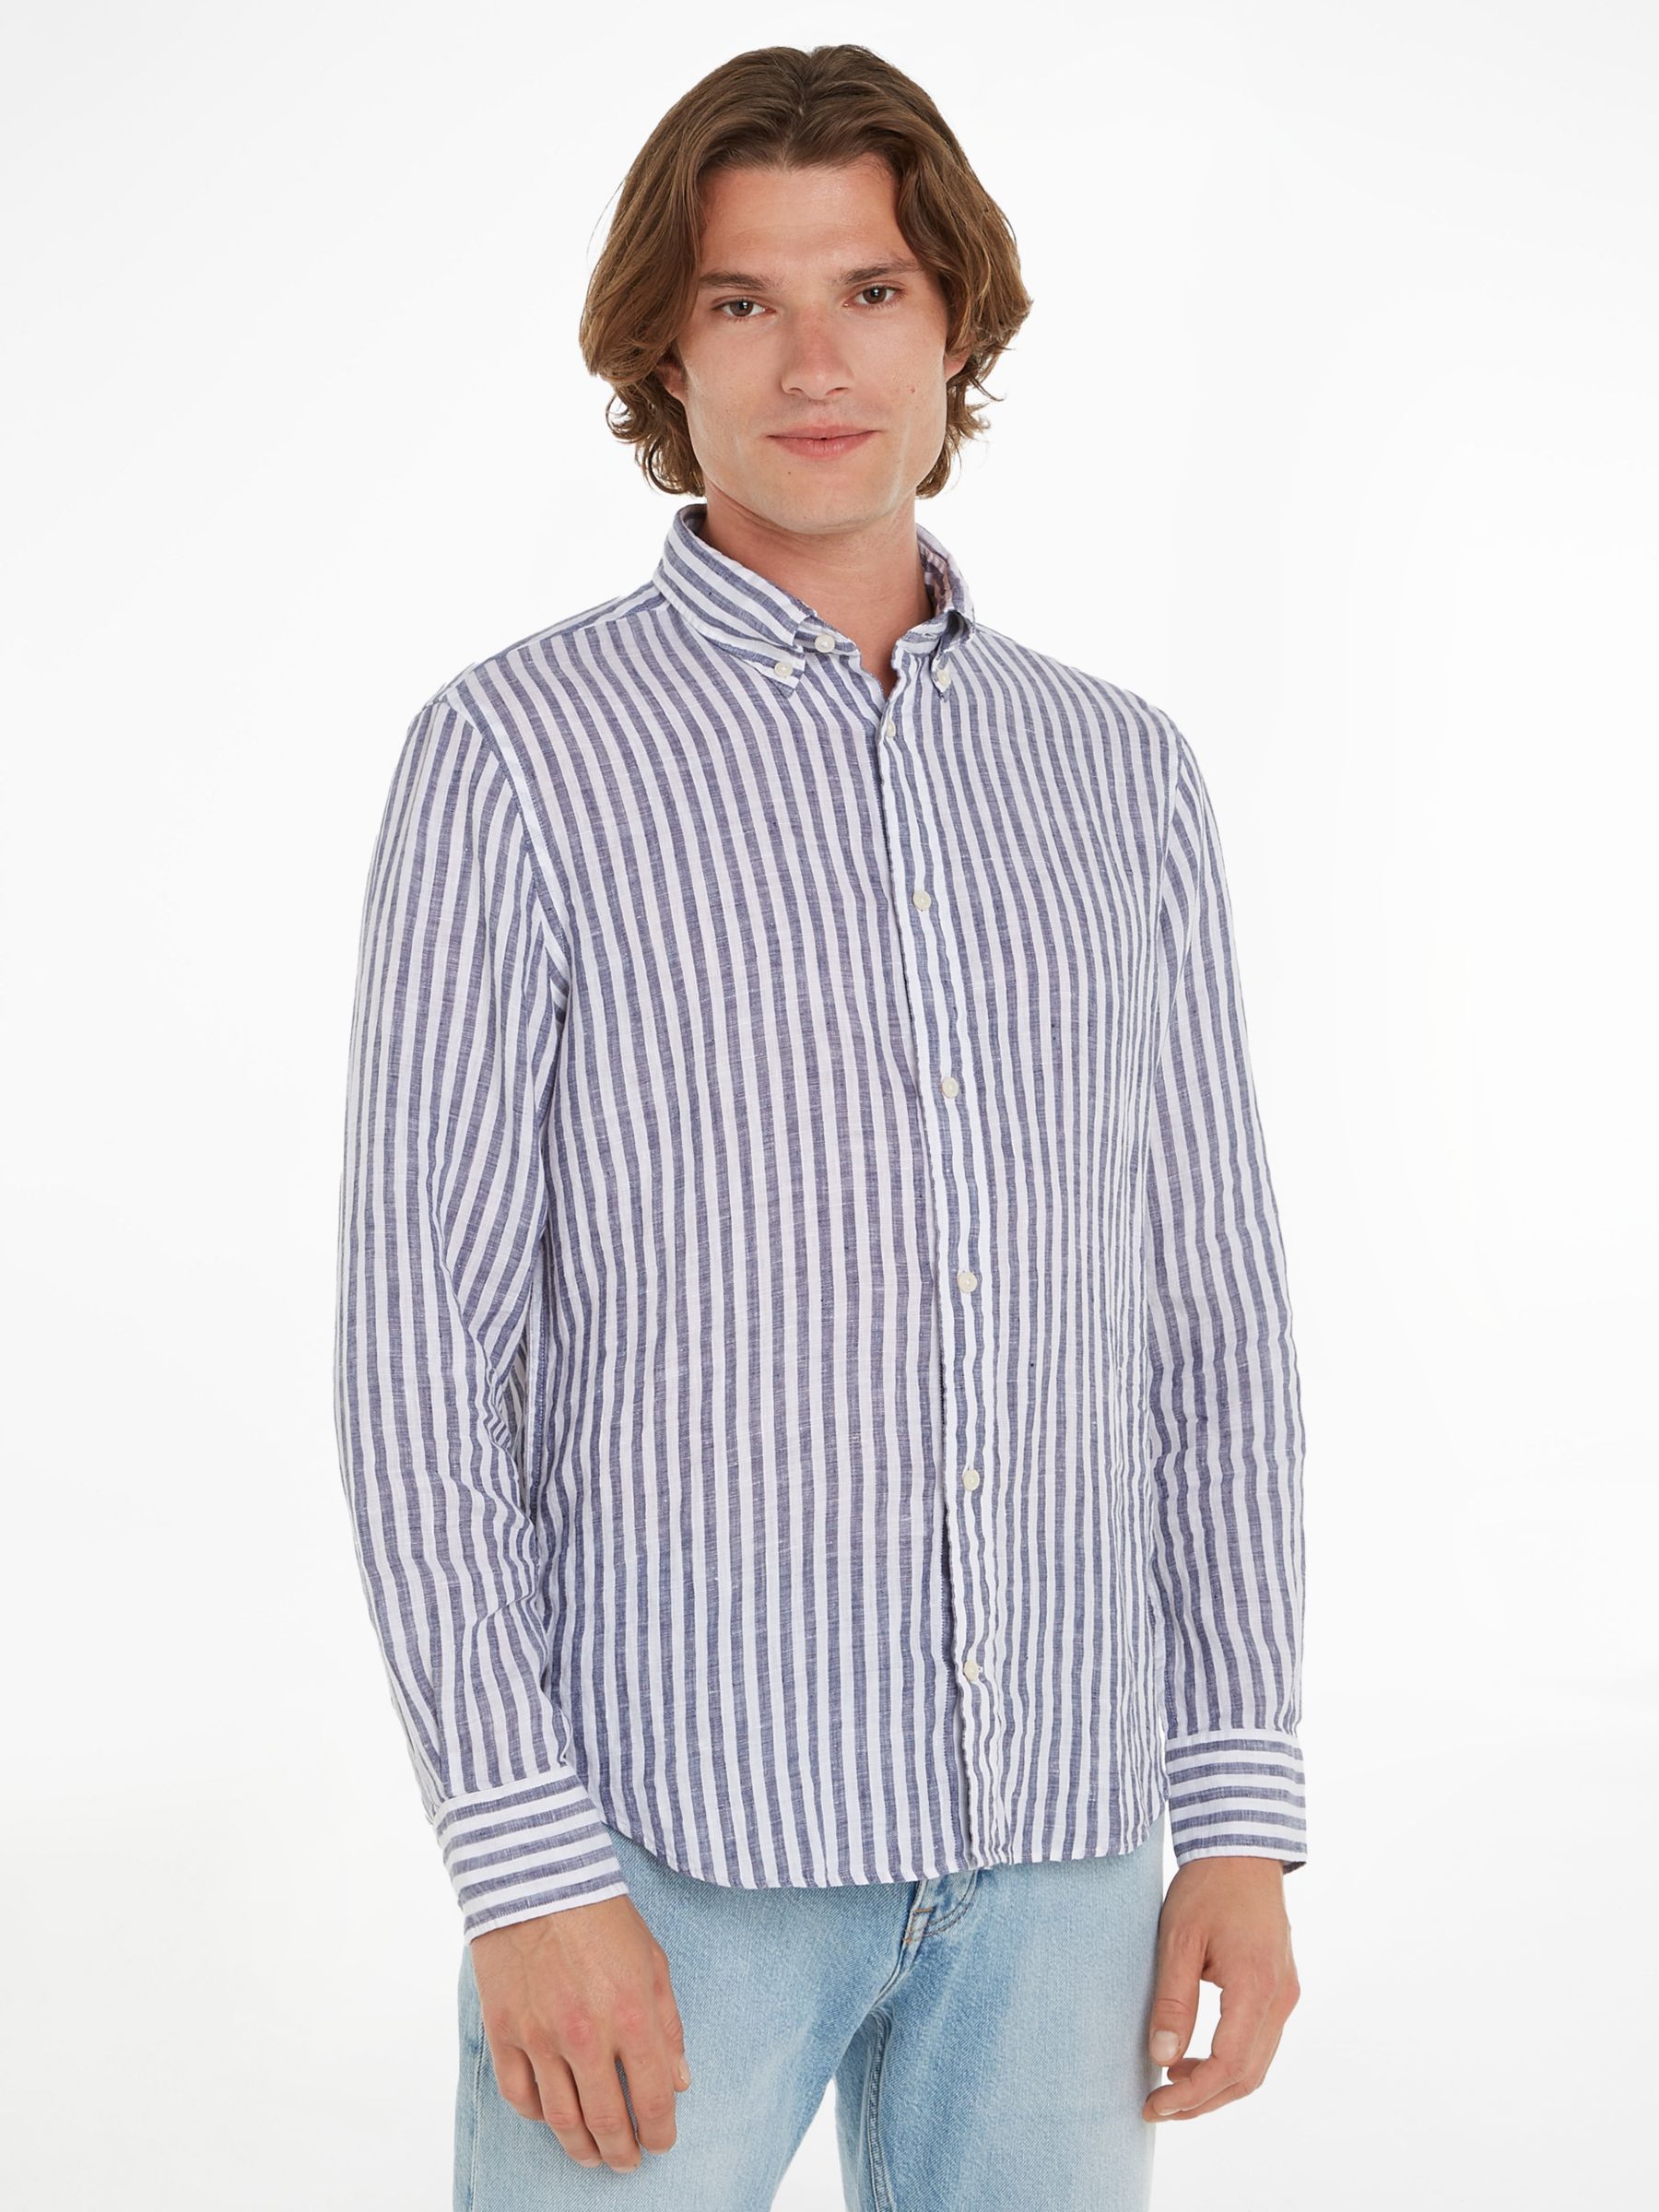 Tommy Hilfiger Linen Stripe Shirt, Dark Navy/White, XS